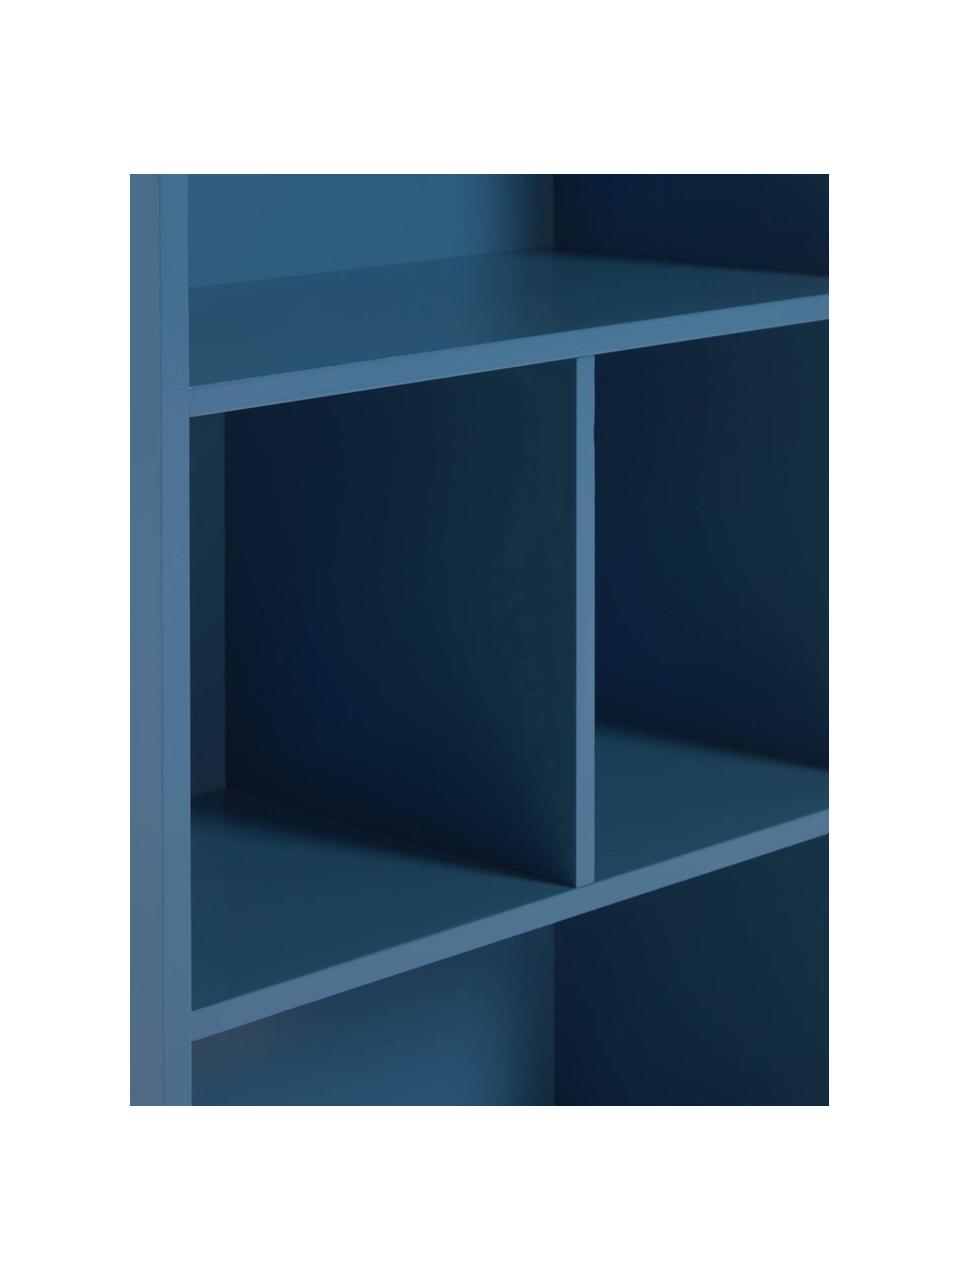 Kinder-Regal Celeste, Mitteldichte Holzfaserplatte (MDF), lackiert, Blau, B 50 x H 105 cm